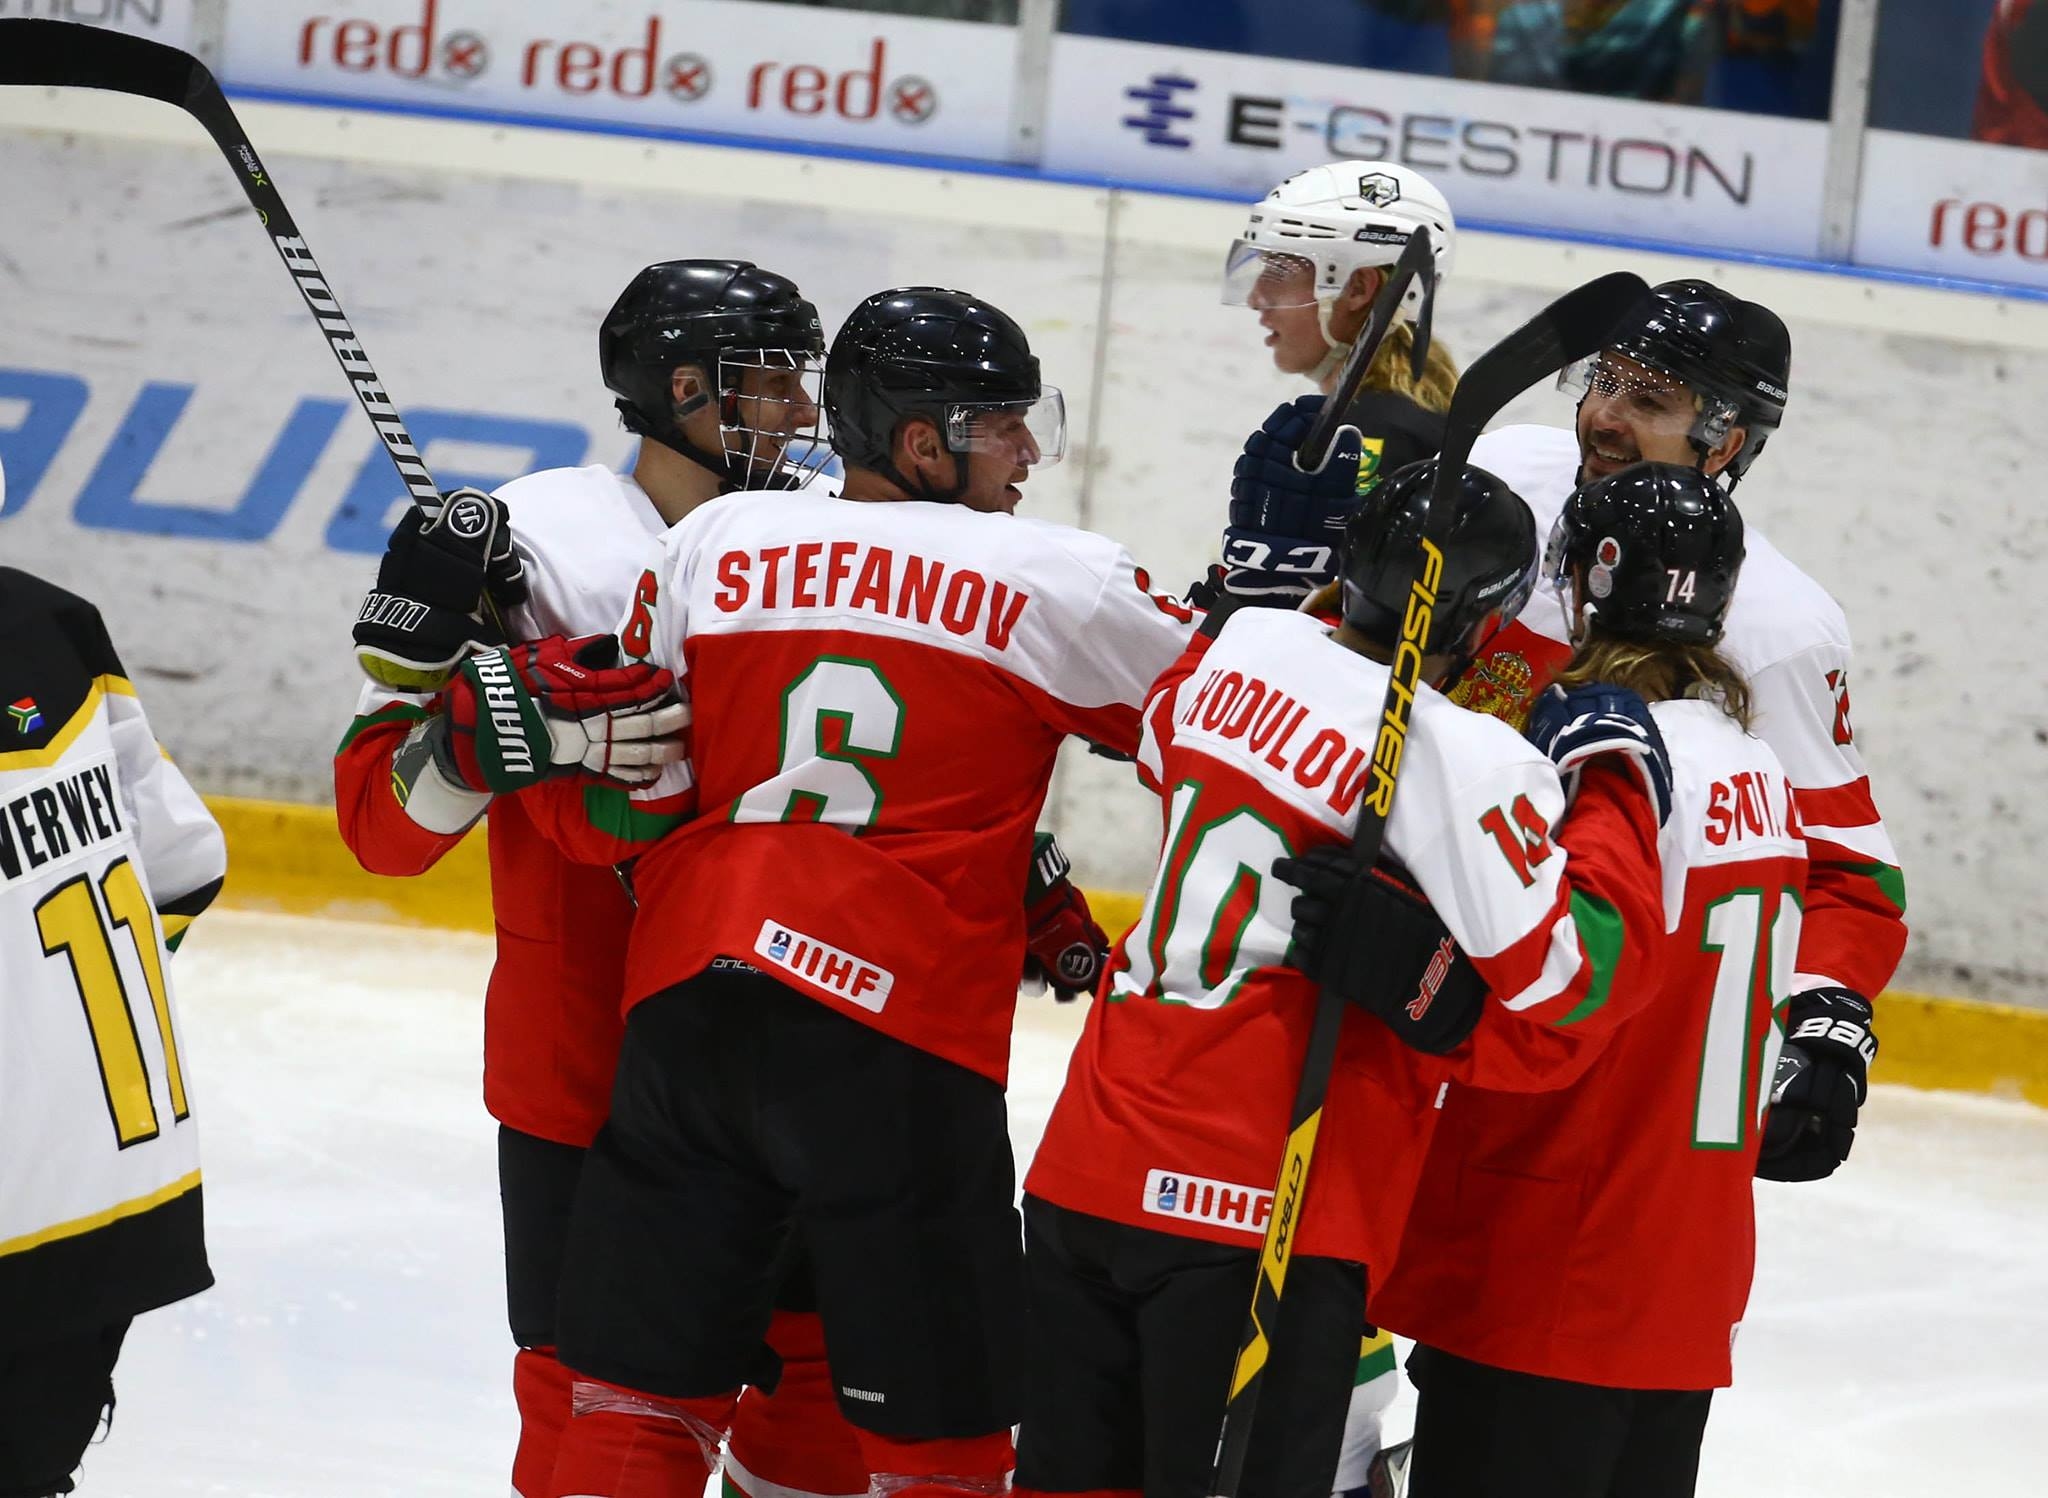 Националният отбор по хокей на лед на България победи Pепублика